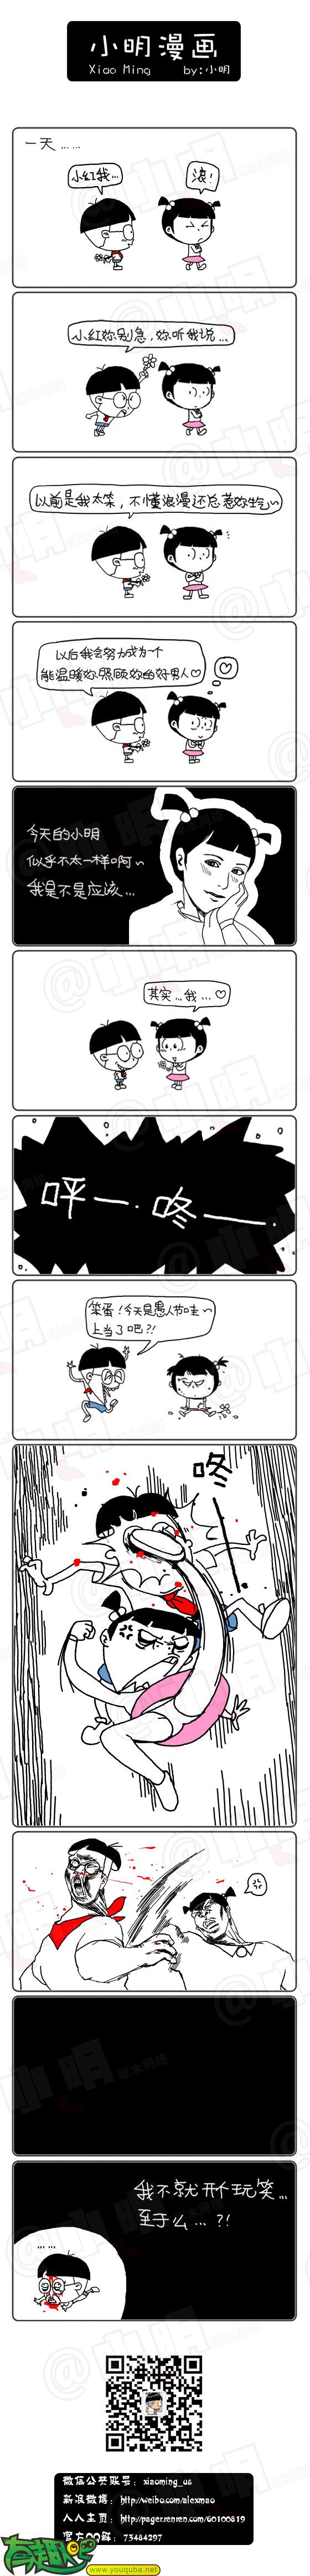 小明系列漫画：愚人节的玩笑